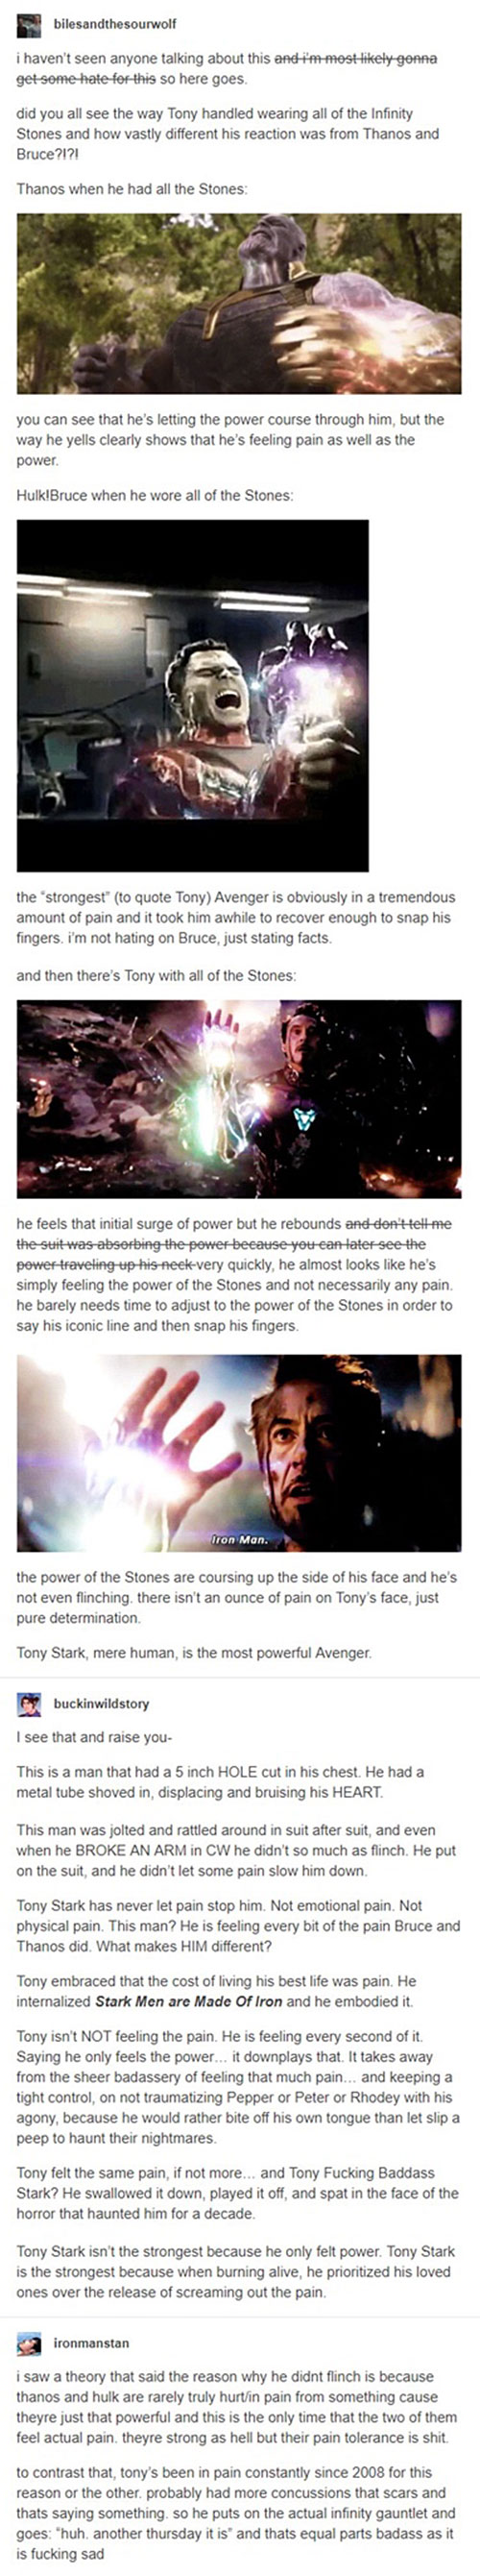 Tony Stark is the Strongest Avenger